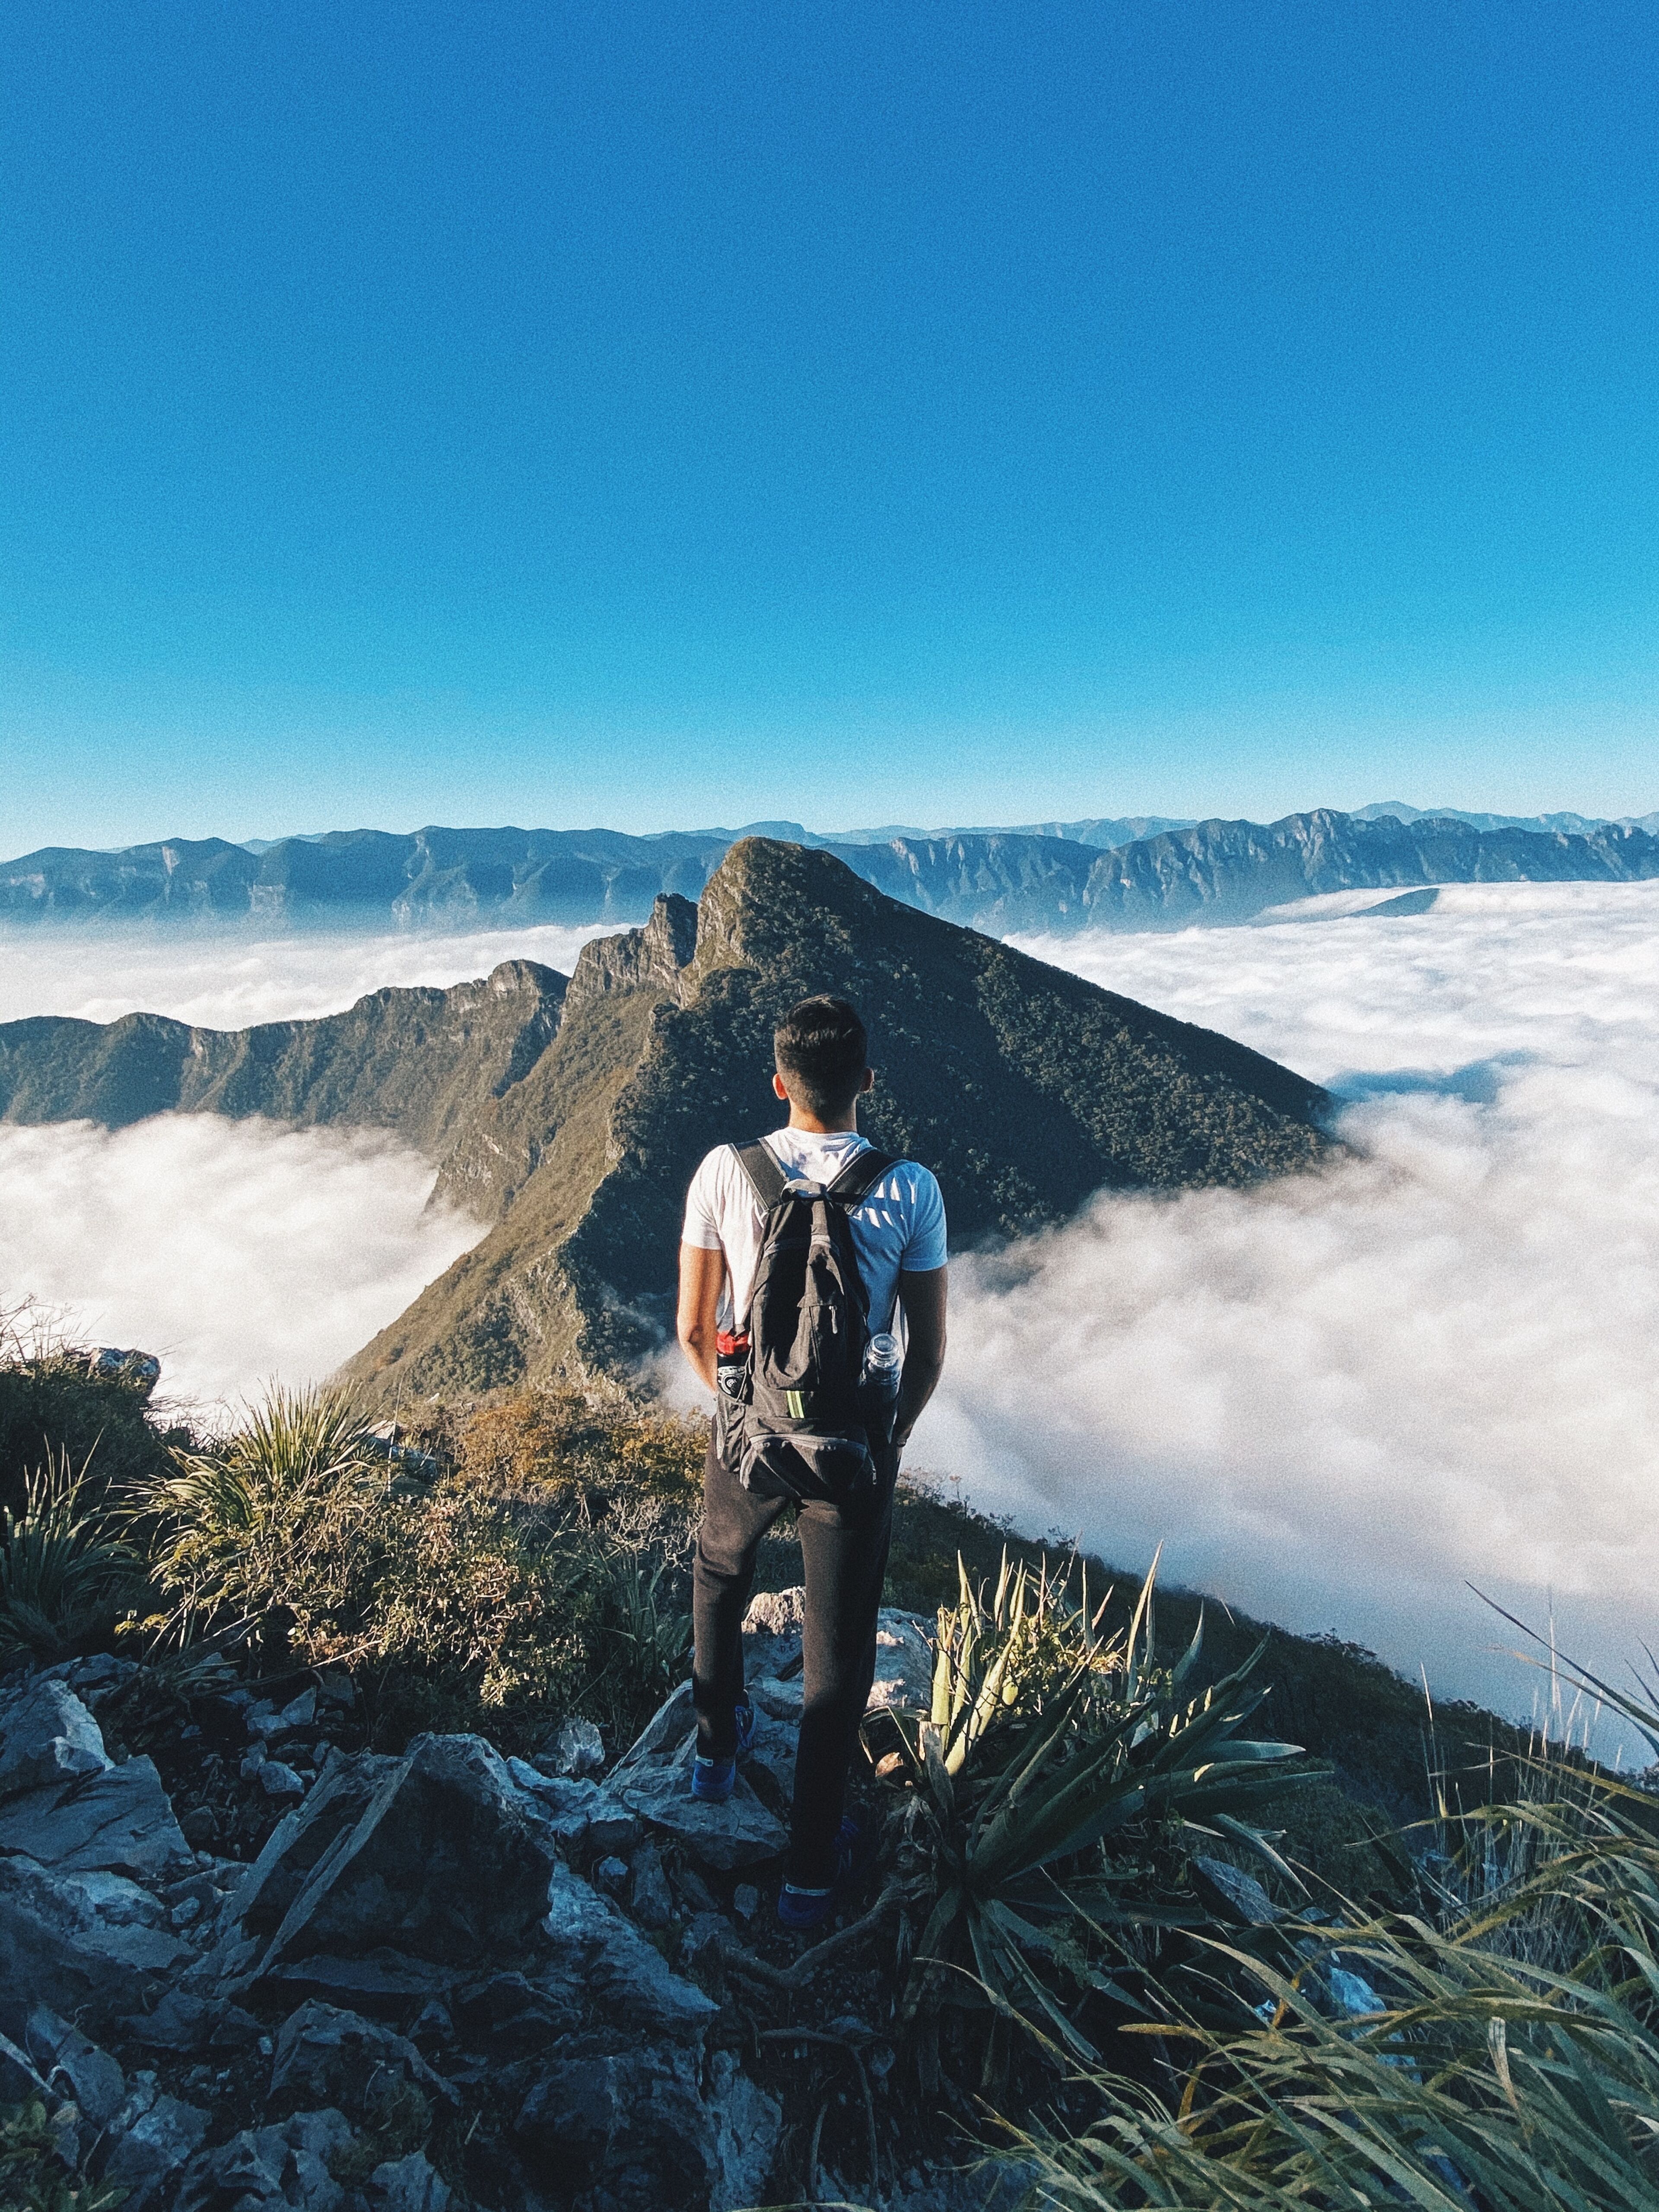 Un excursionista solitario se para en la cima de un pico accidentado, observando un mar de nubes que envuelven montañas distantes bajo un cielo azul despejado.